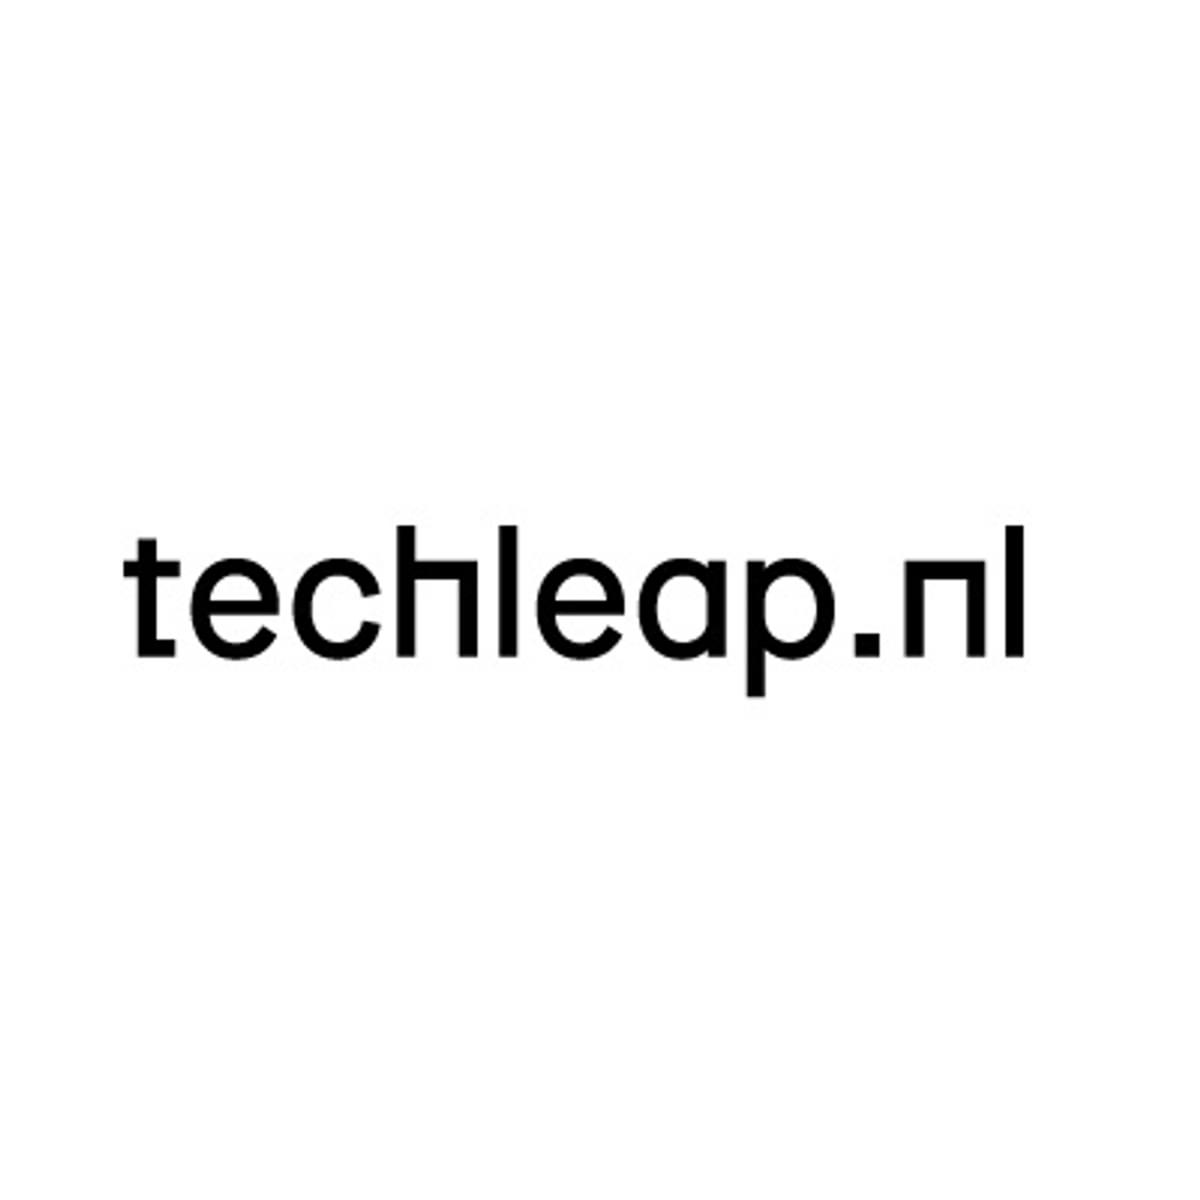 Techleap.nl belicht aanbrekende innovaties van de wetenschap in Nederland image